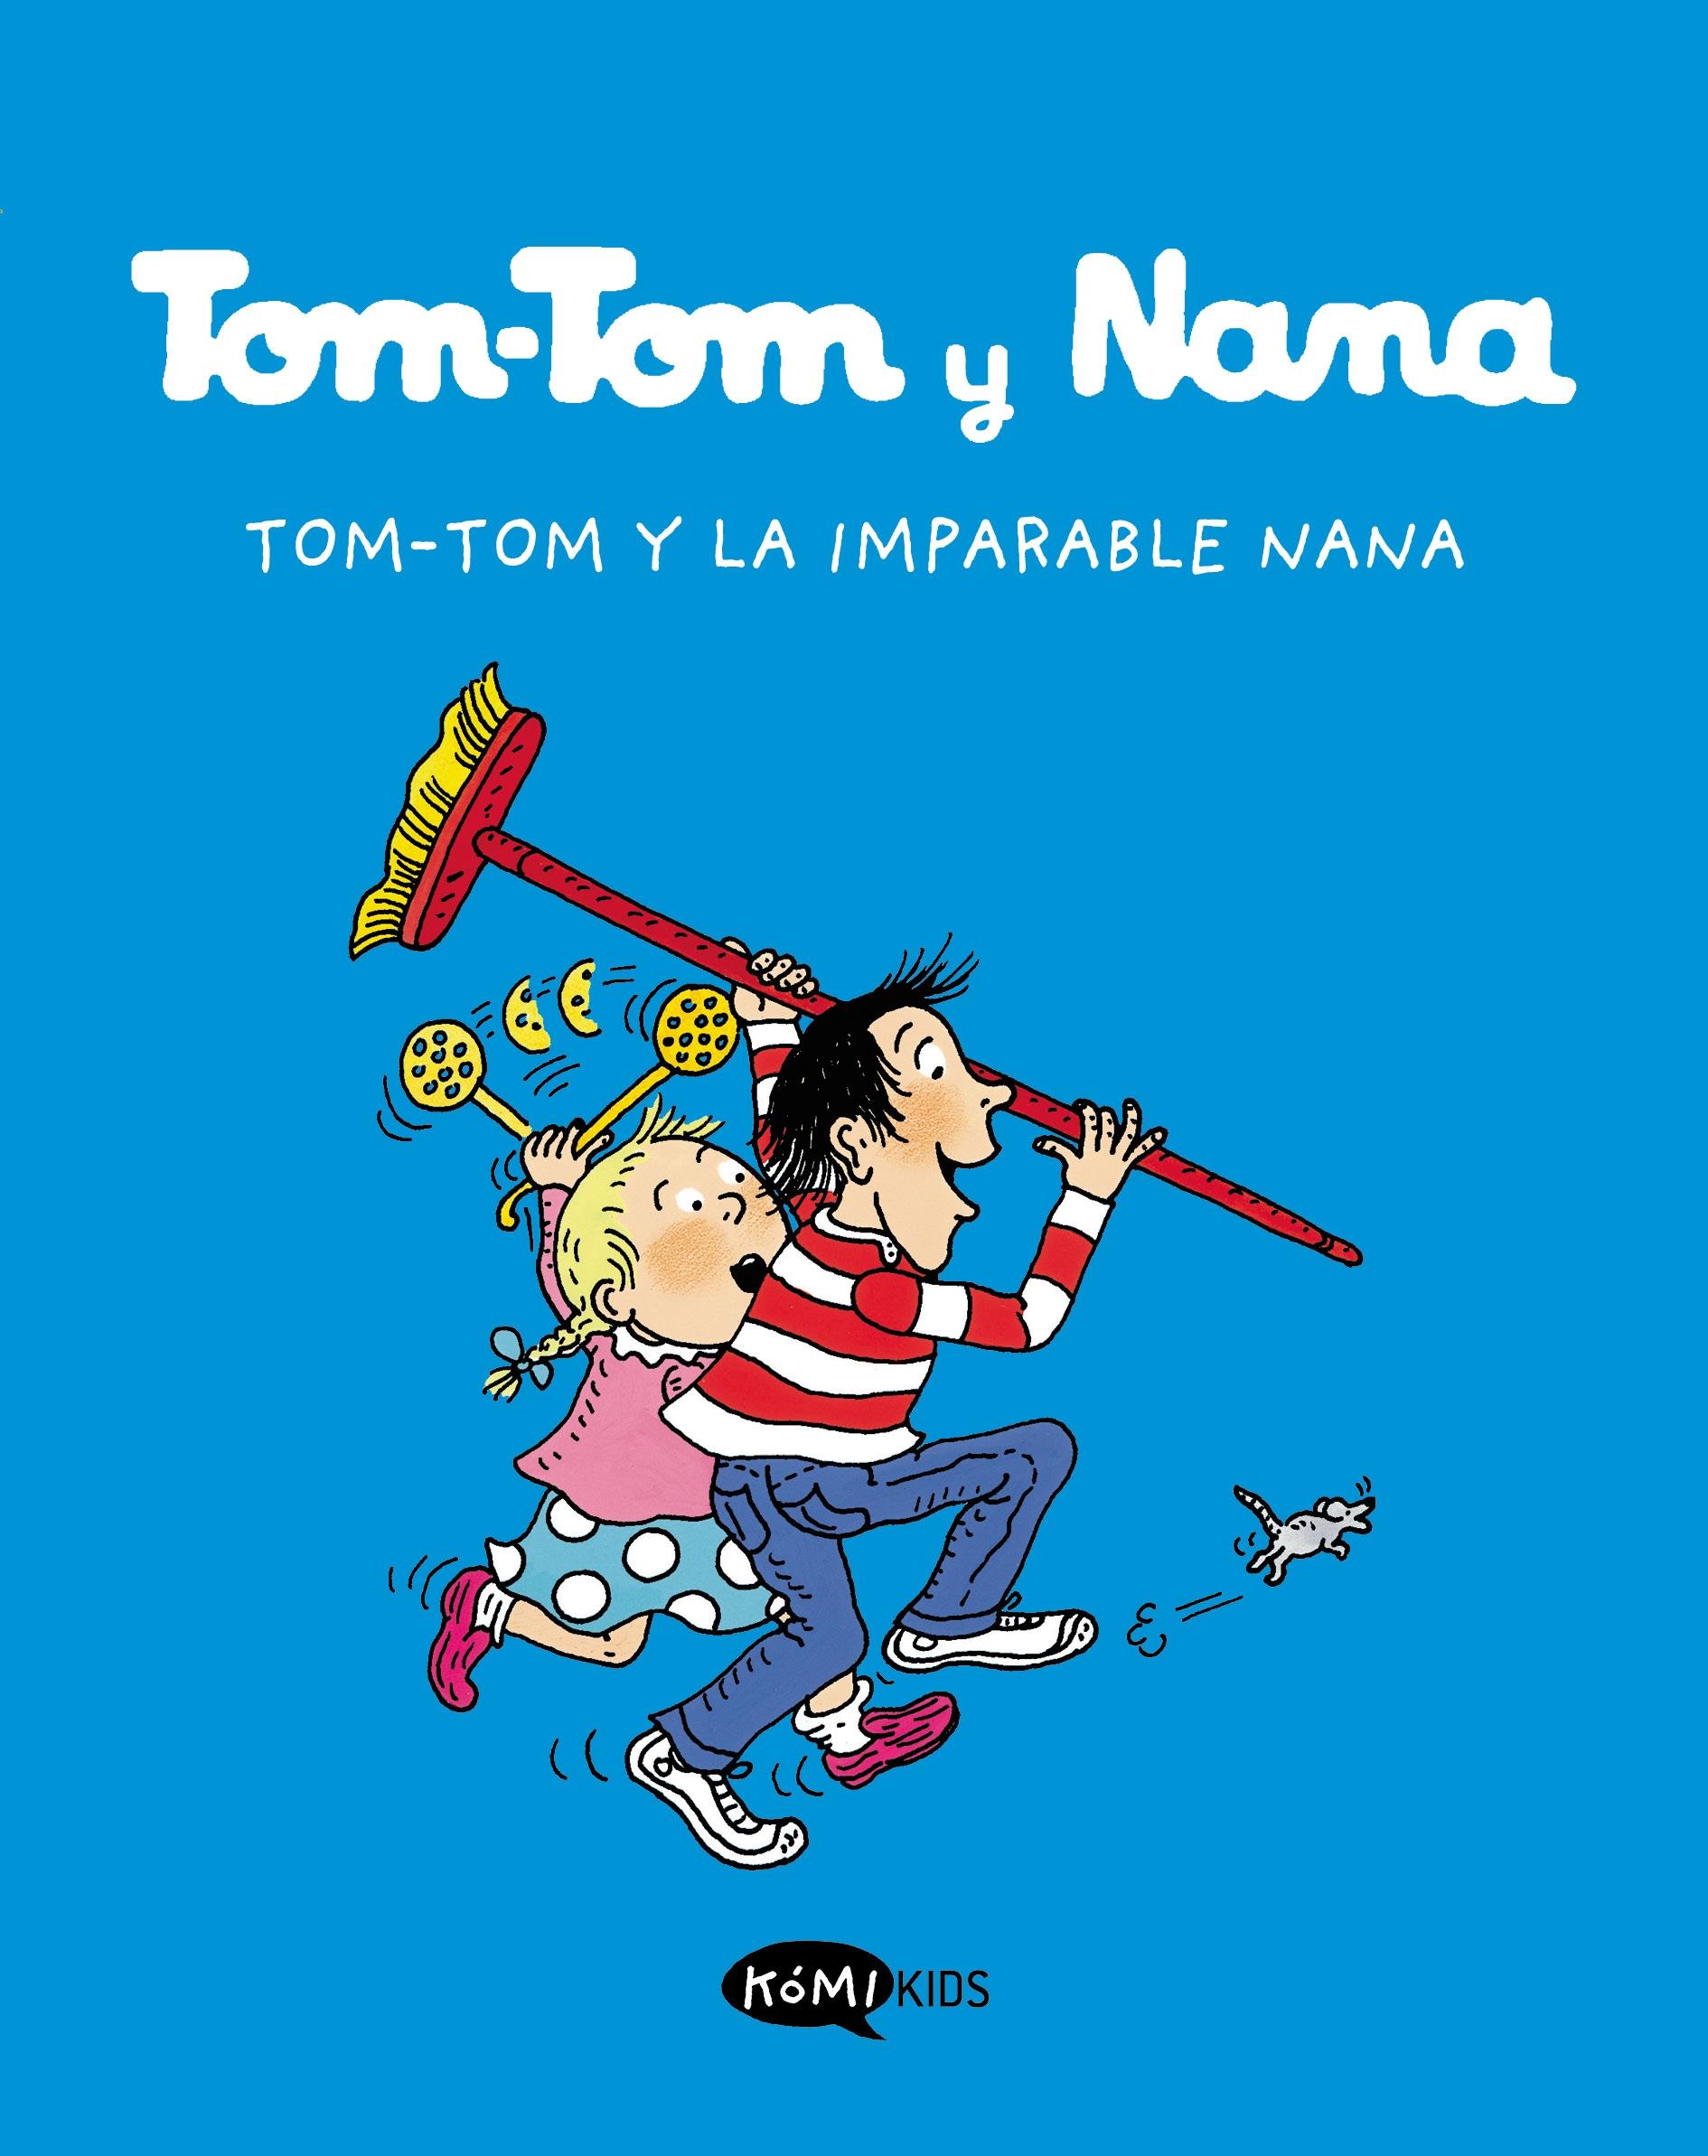 Tom-Tom y Nana 1 "Tom-Tom y la Imparable Nana"